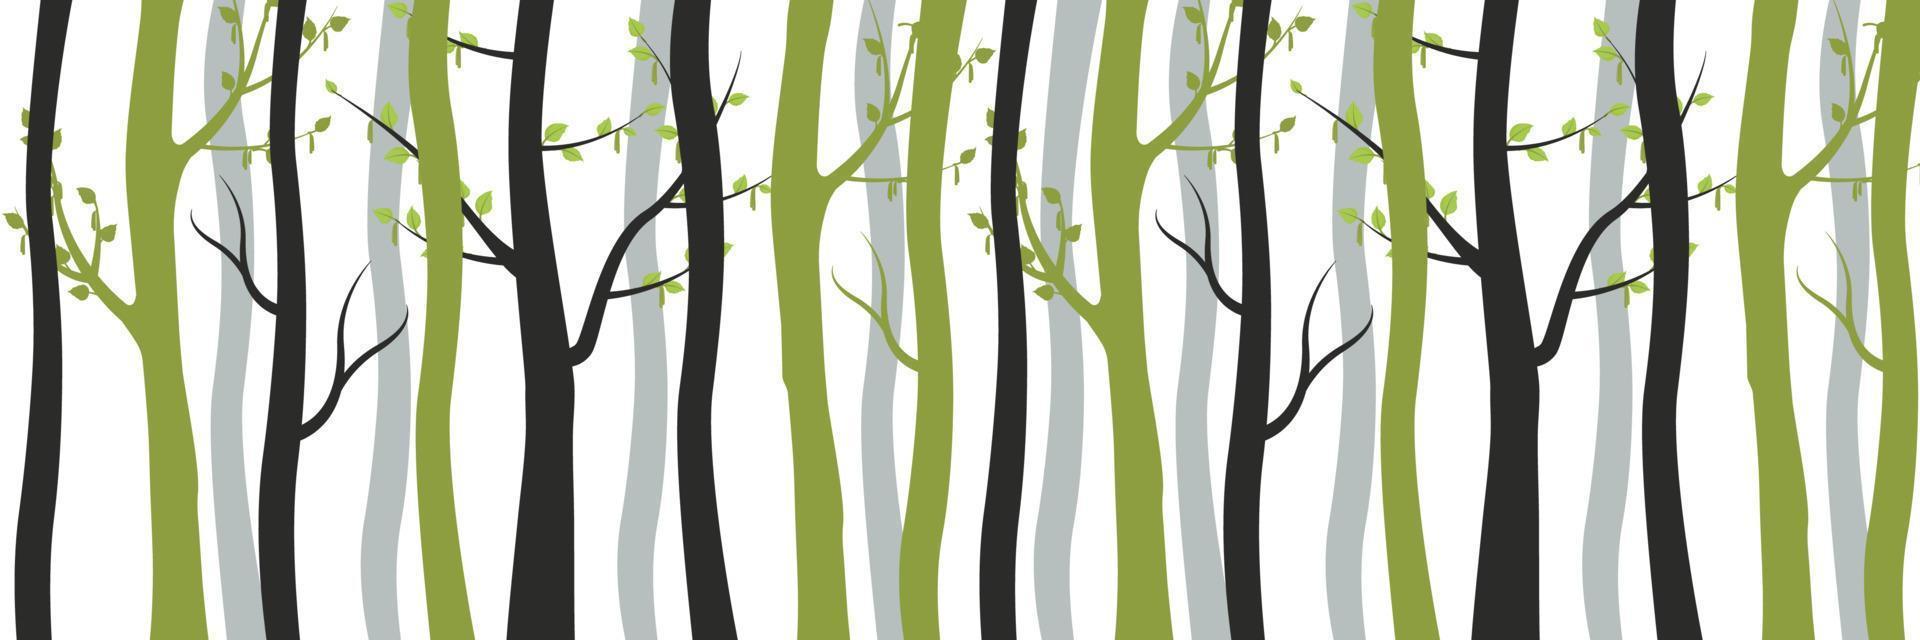 arbres noirs verts et flétris sur fond de forêt. de jeunes bouleaux élancés aux feuilles épanouies et aux vieux troncs morts entrelacés. vecteur